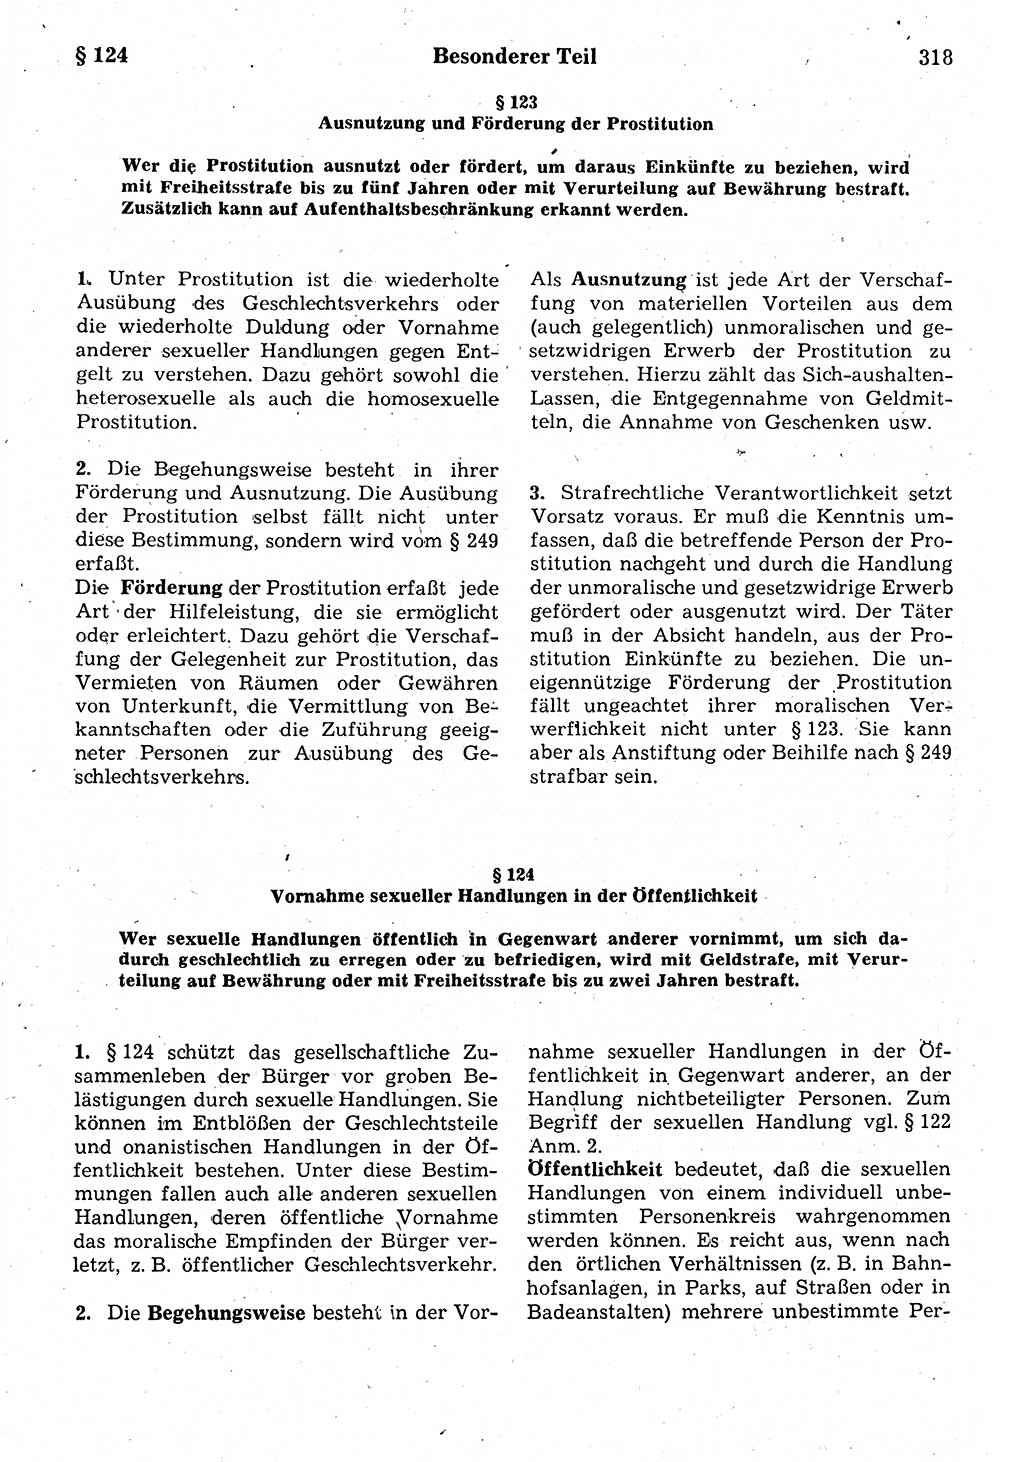 Strafrecht der Deutschen Demokratischen Republik (DDR), Kommentar zum Strafgesetzbuch (StGB) 1987, Seite 318 (Strafr. DDR Komm. StGB 1987, S. 318)